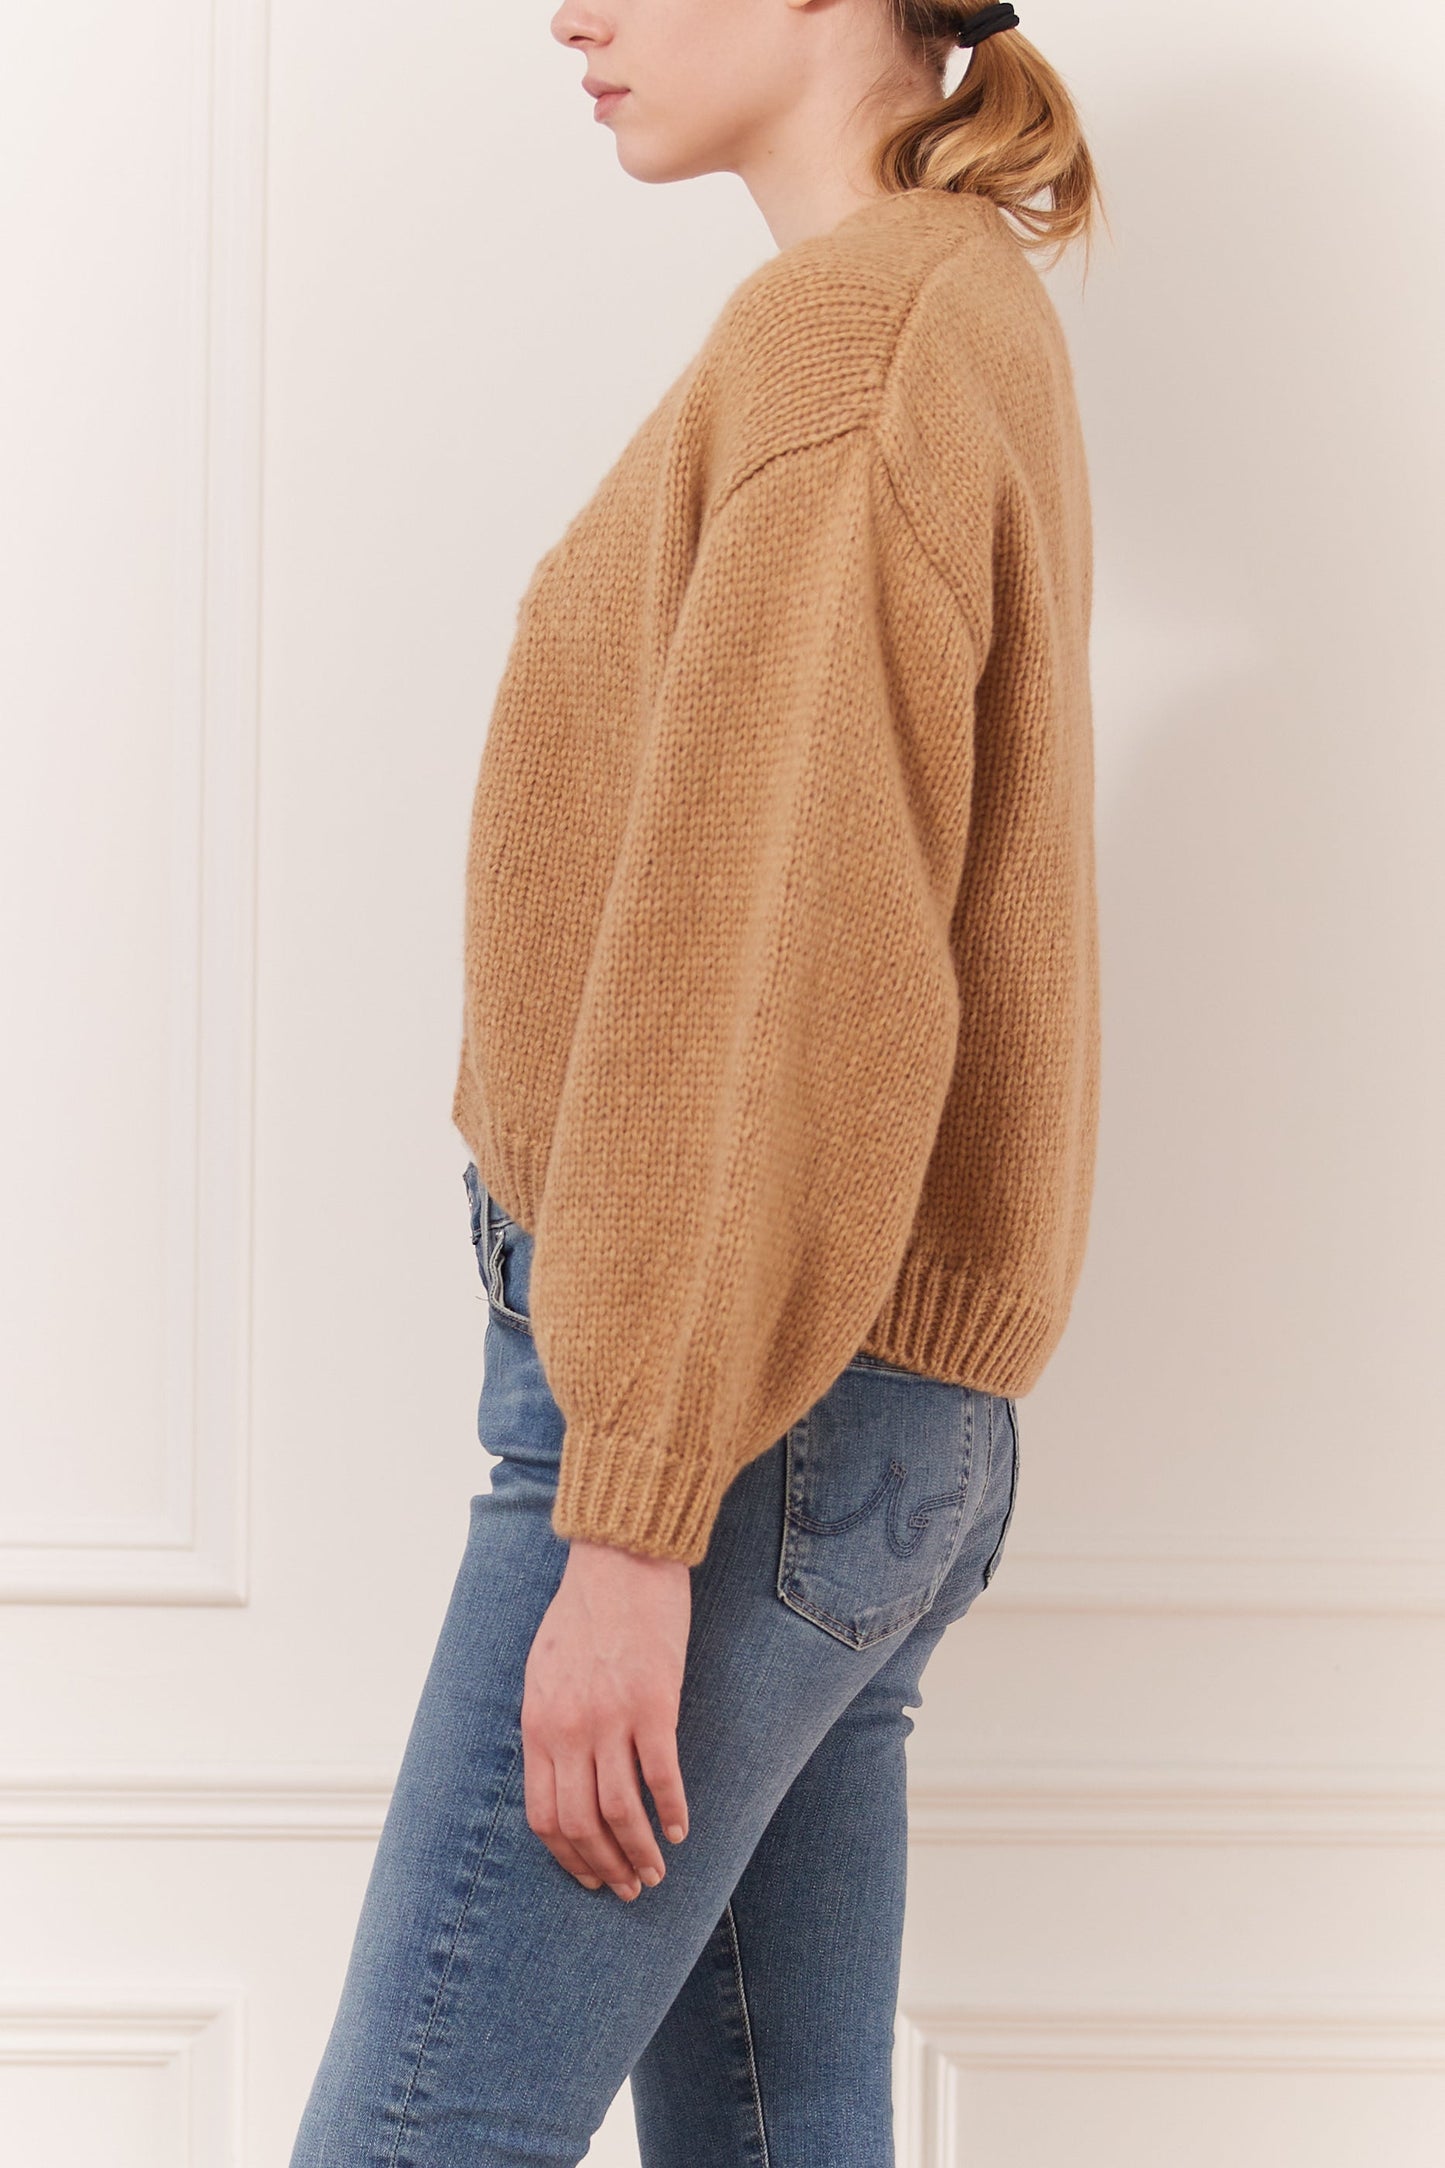 Oversize cardigan sweater